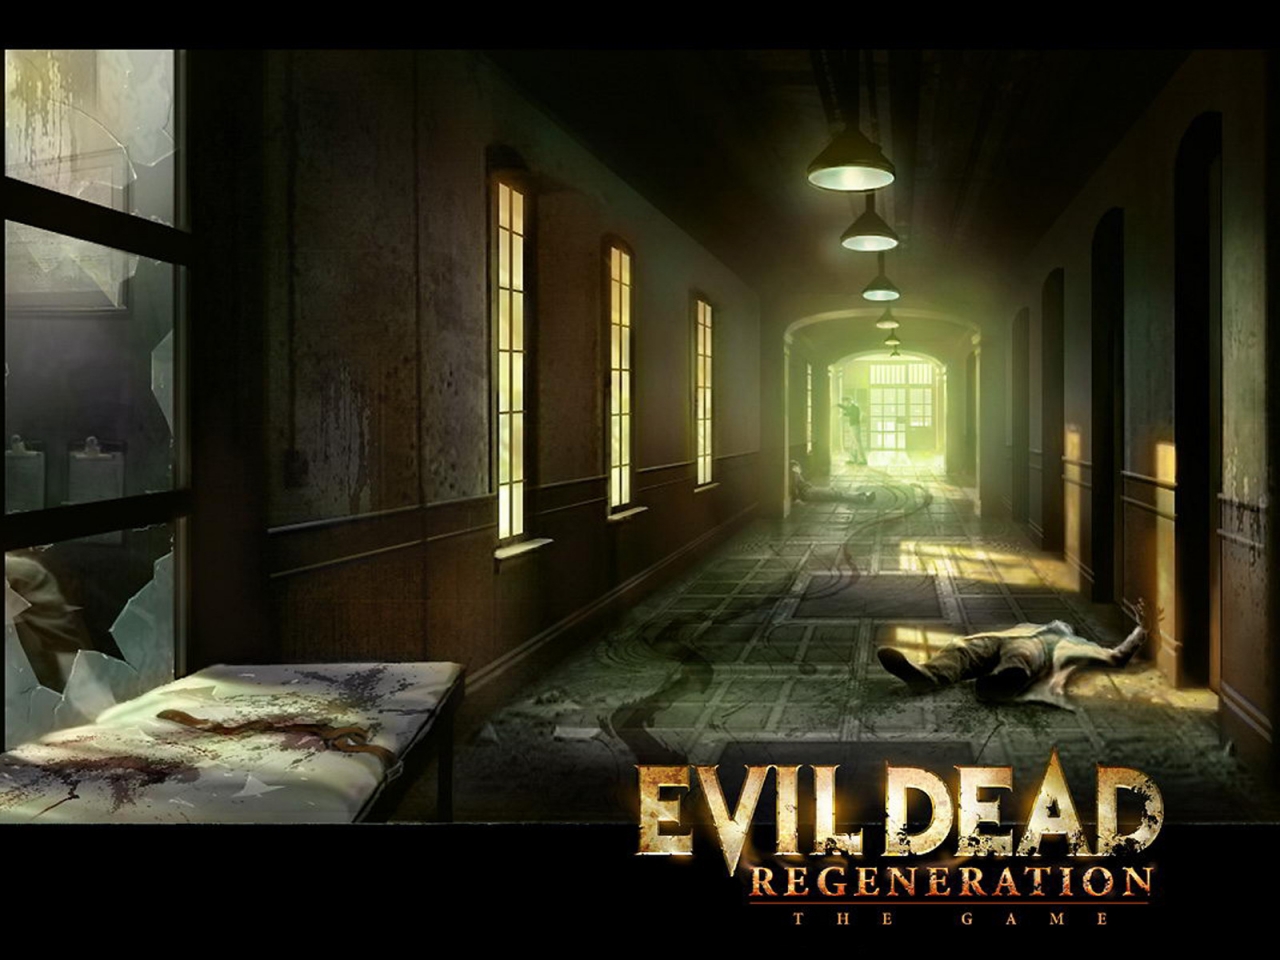 Evil Dead Regeneration for 1280 x 960 resolution